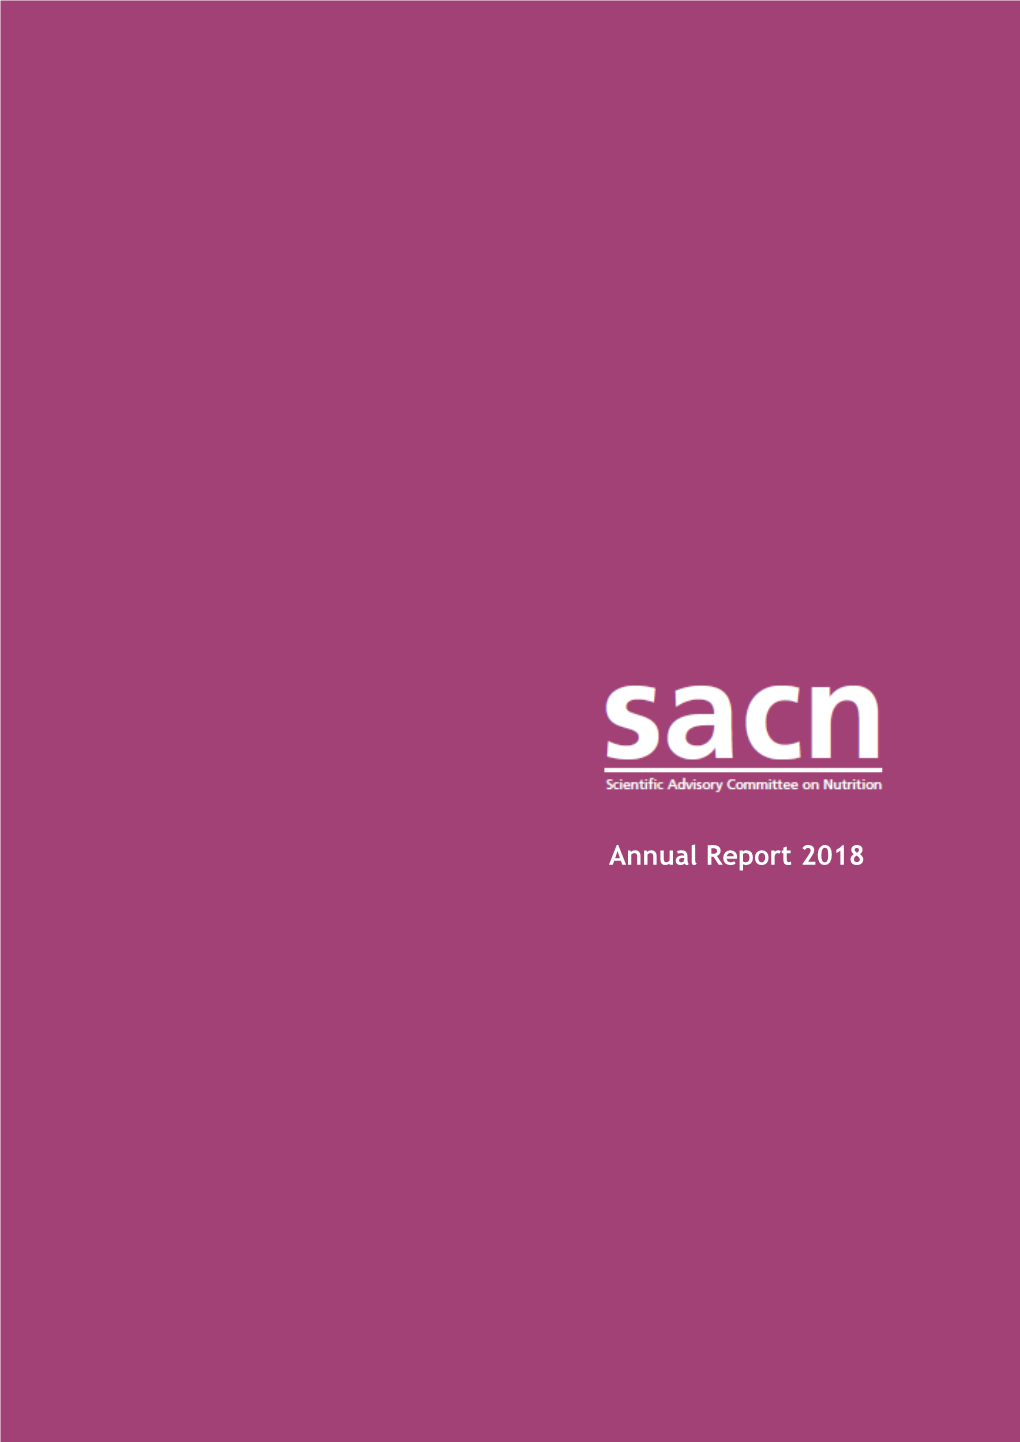 SACN Annual Report 2018